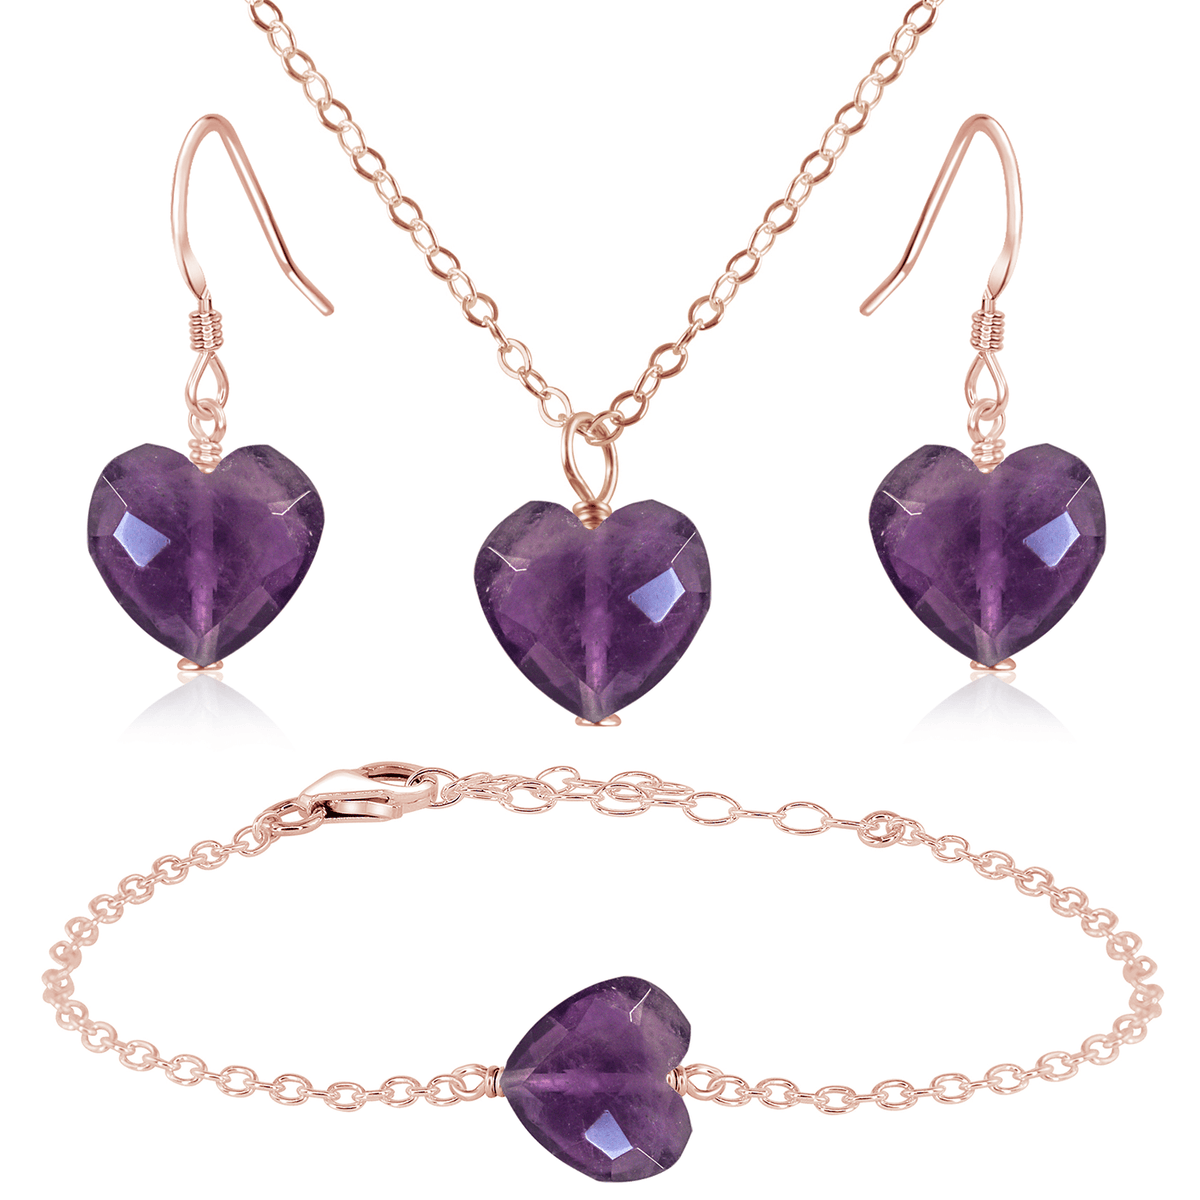 Amethyst Crystal Heart Jewellery Set - Amethyst Crystal Heart Jewellery Set - 14k Rose Gold Fill / Cable / Necklace & Earrings & Bracelet - Luna Tide Handmade Crystal Jewellery